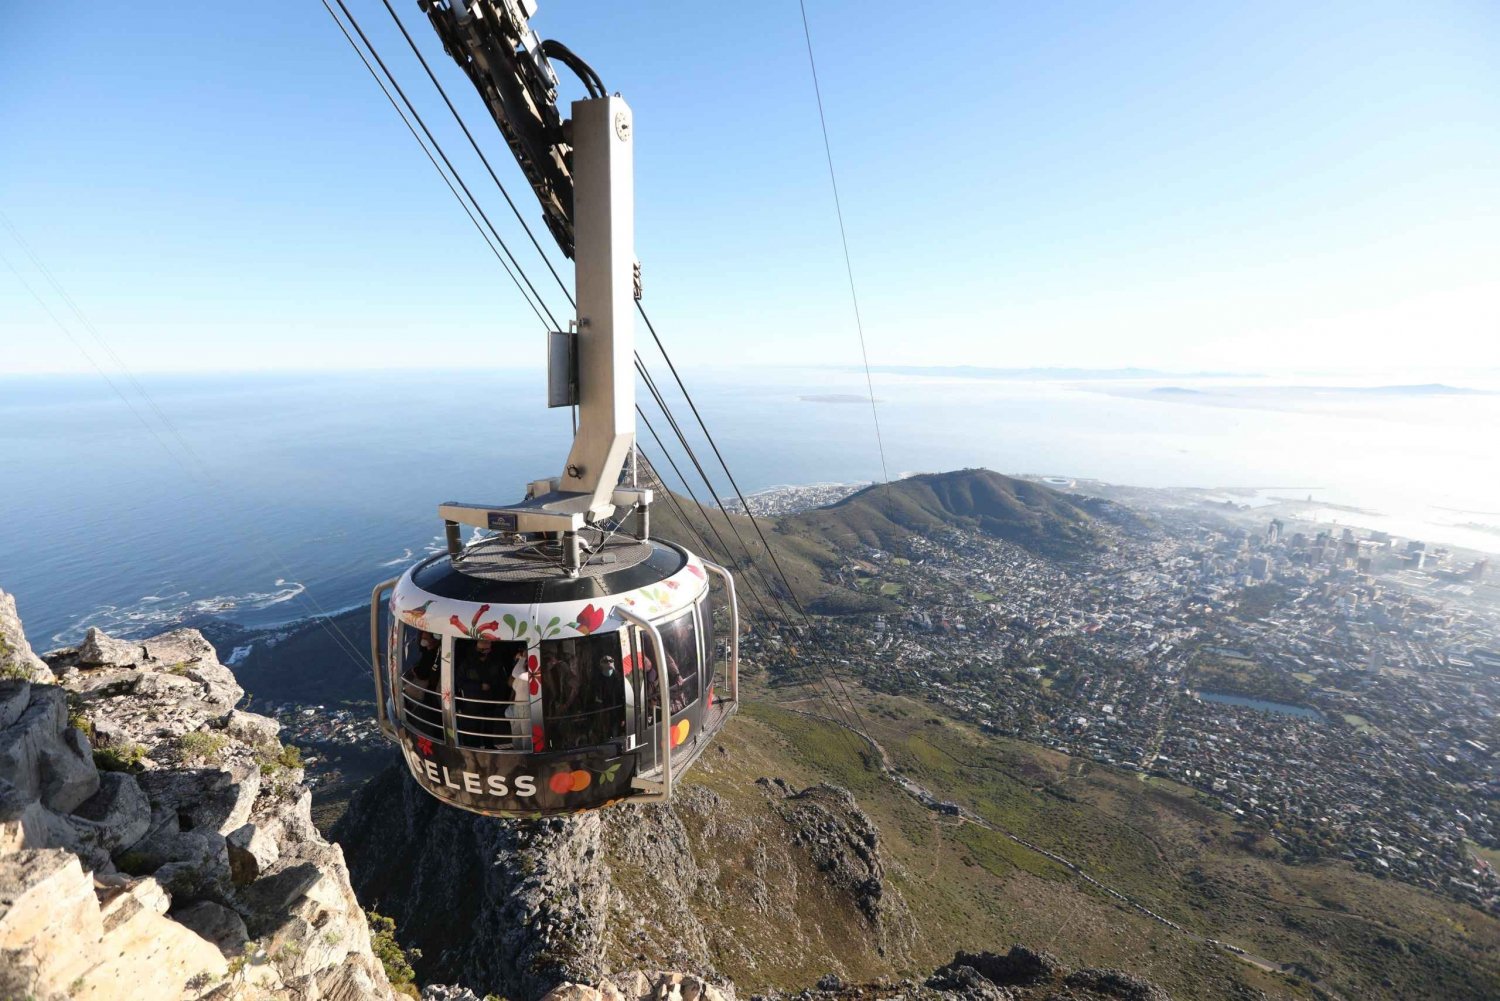 Biljett med Skip The Line Table Mountain linbana från Kapstaden